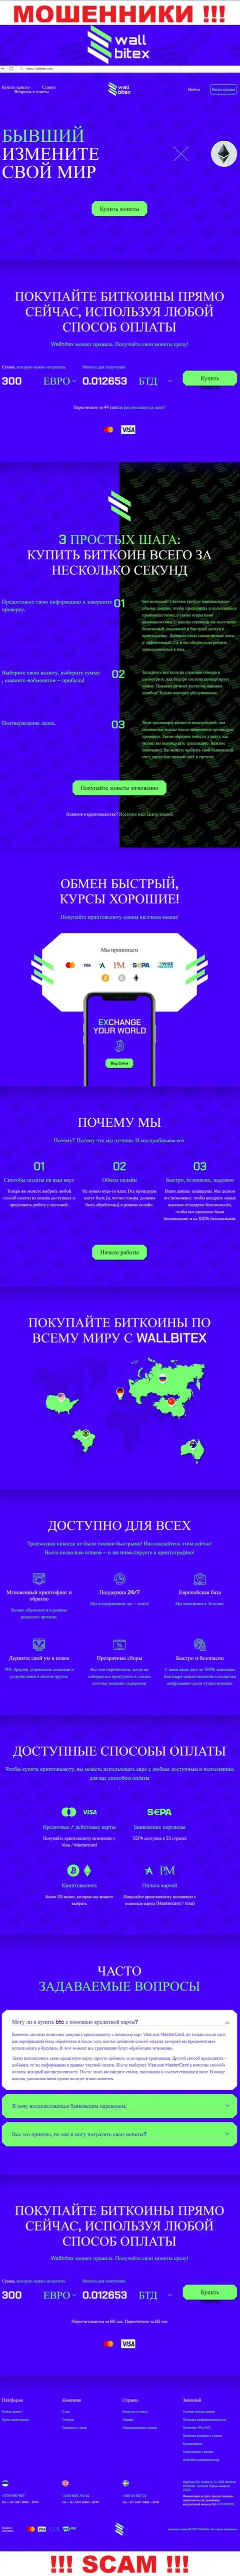 WallBitex Com - это сайт противоправно действующей конторы WallBitex